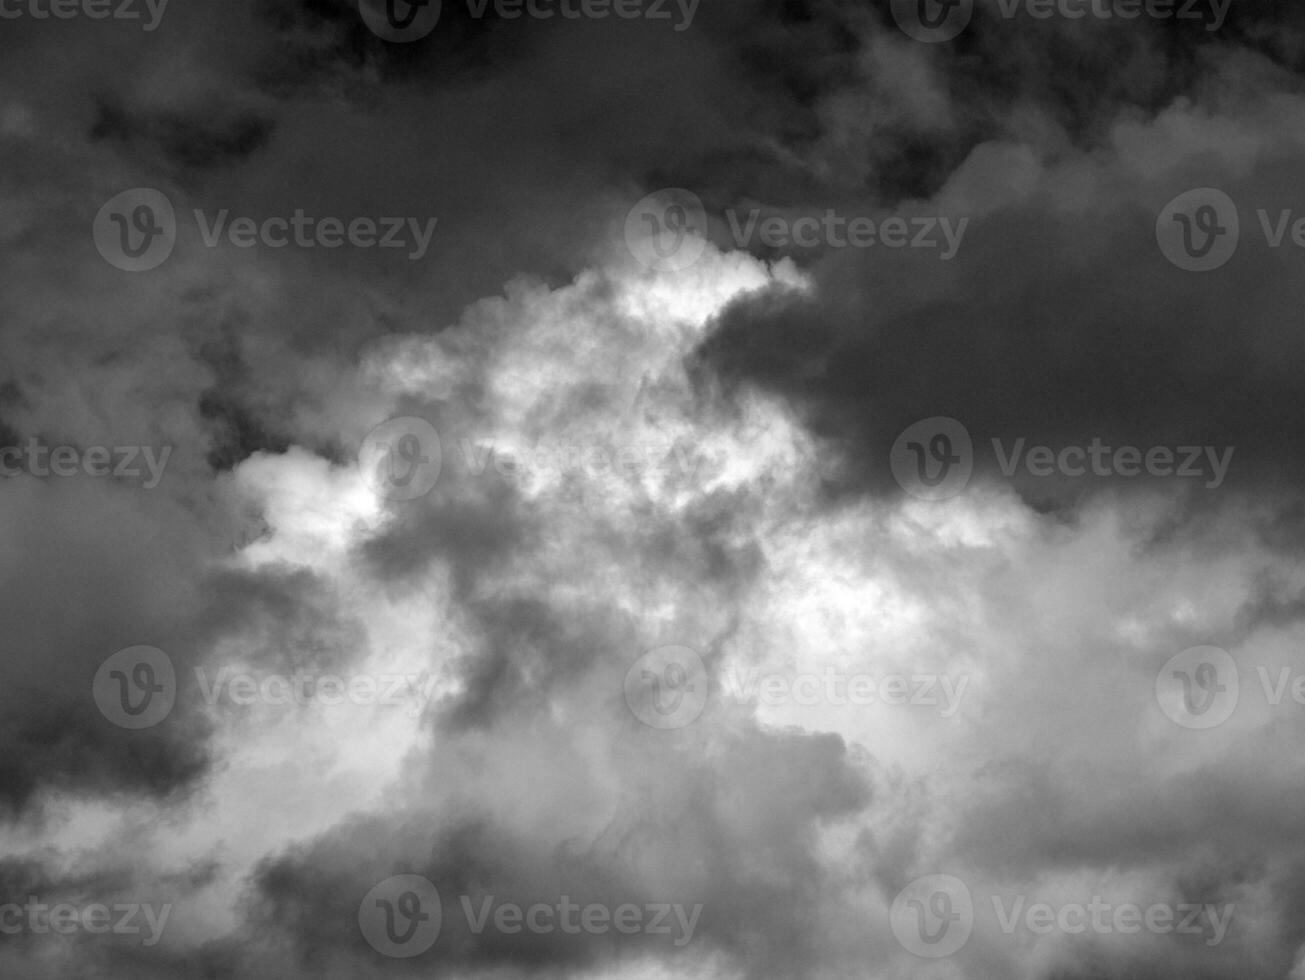 schwarz und Weiß schön Himmel Hintergrund foto